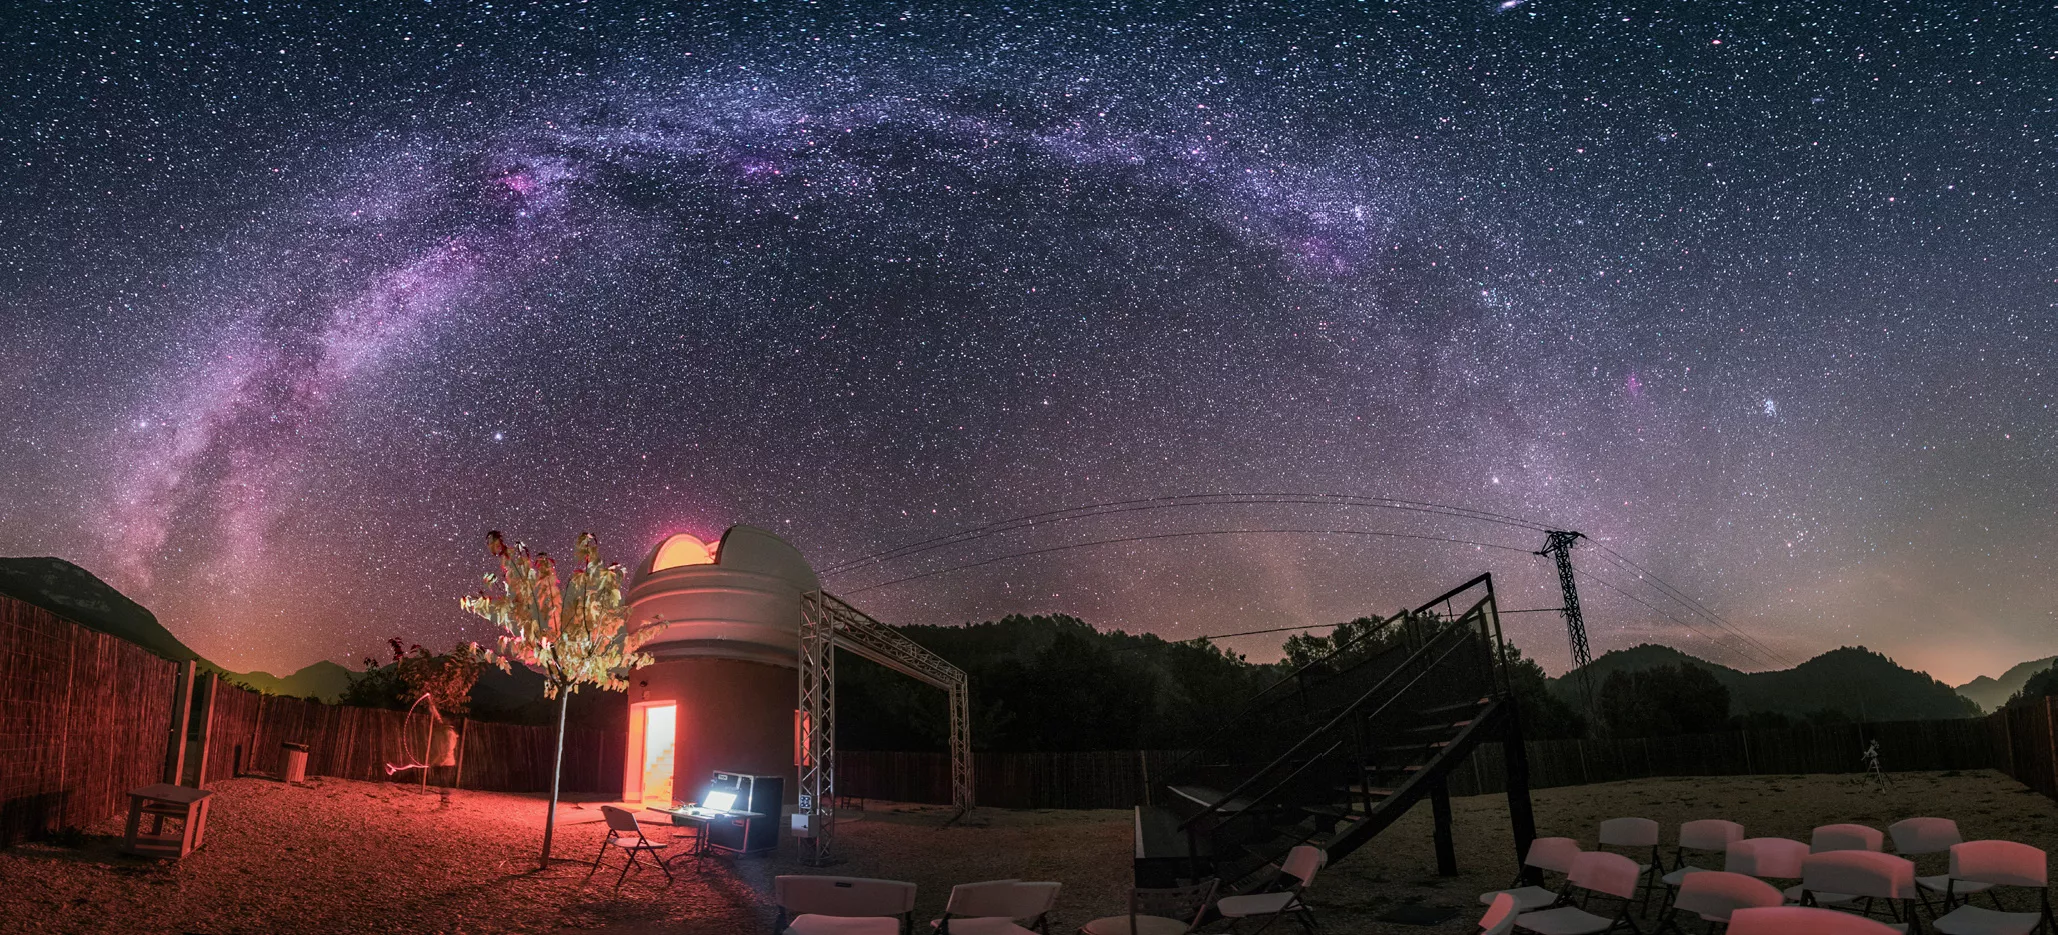 L’Observatori d’Albanyà té les dues certificacions de cels foscos més prestigioses a escala internacional